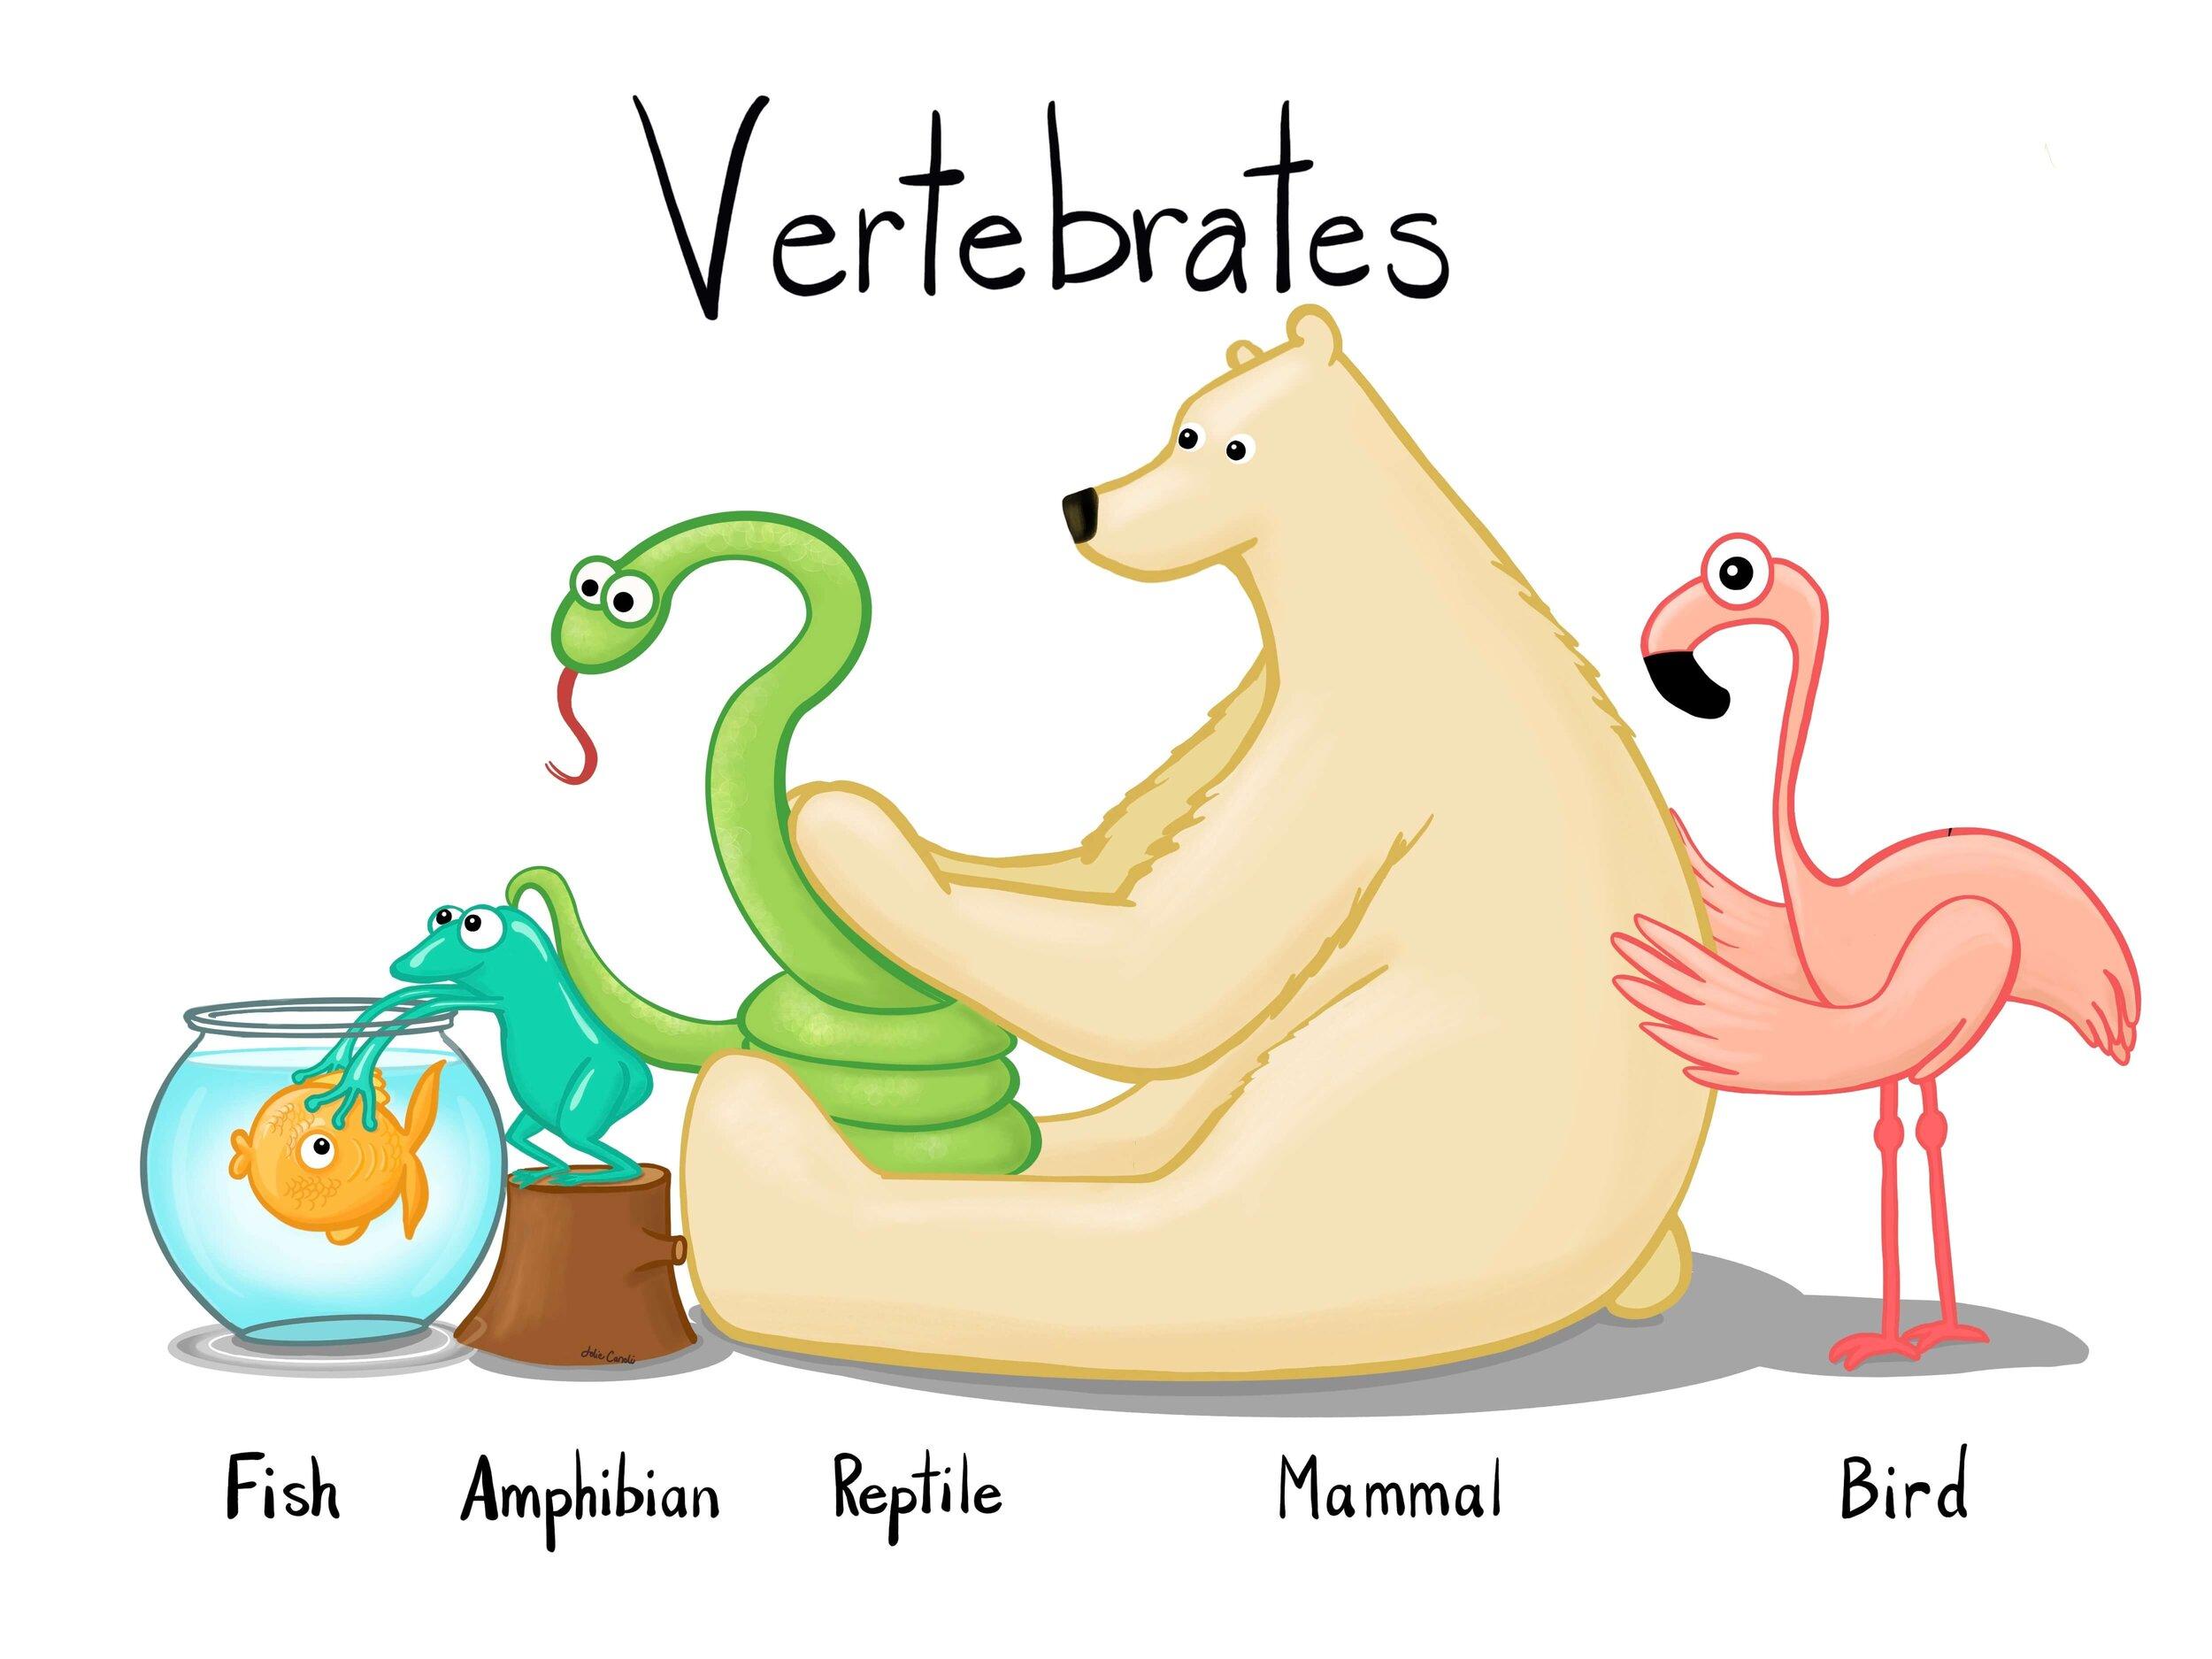 What are Vertebrates?